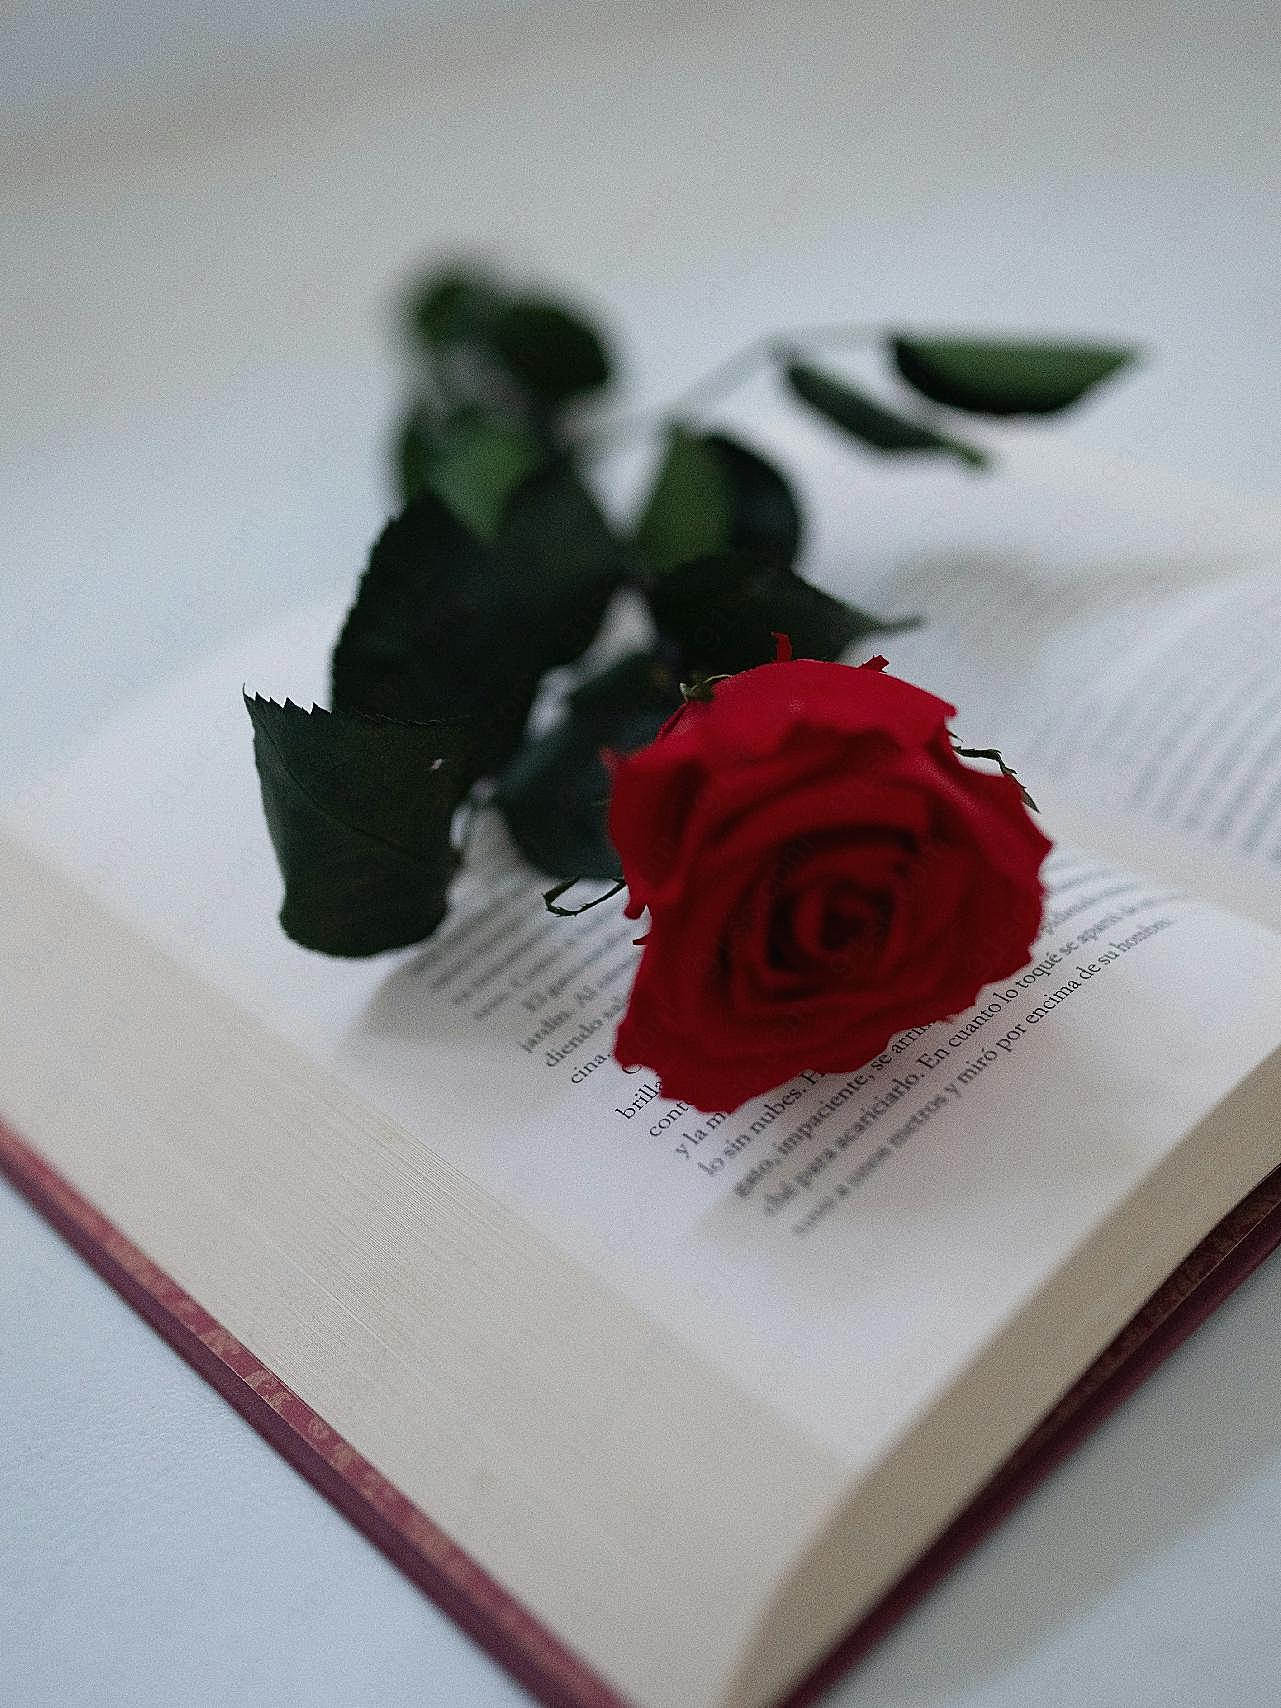 书本上的一朵图片玫瑰花